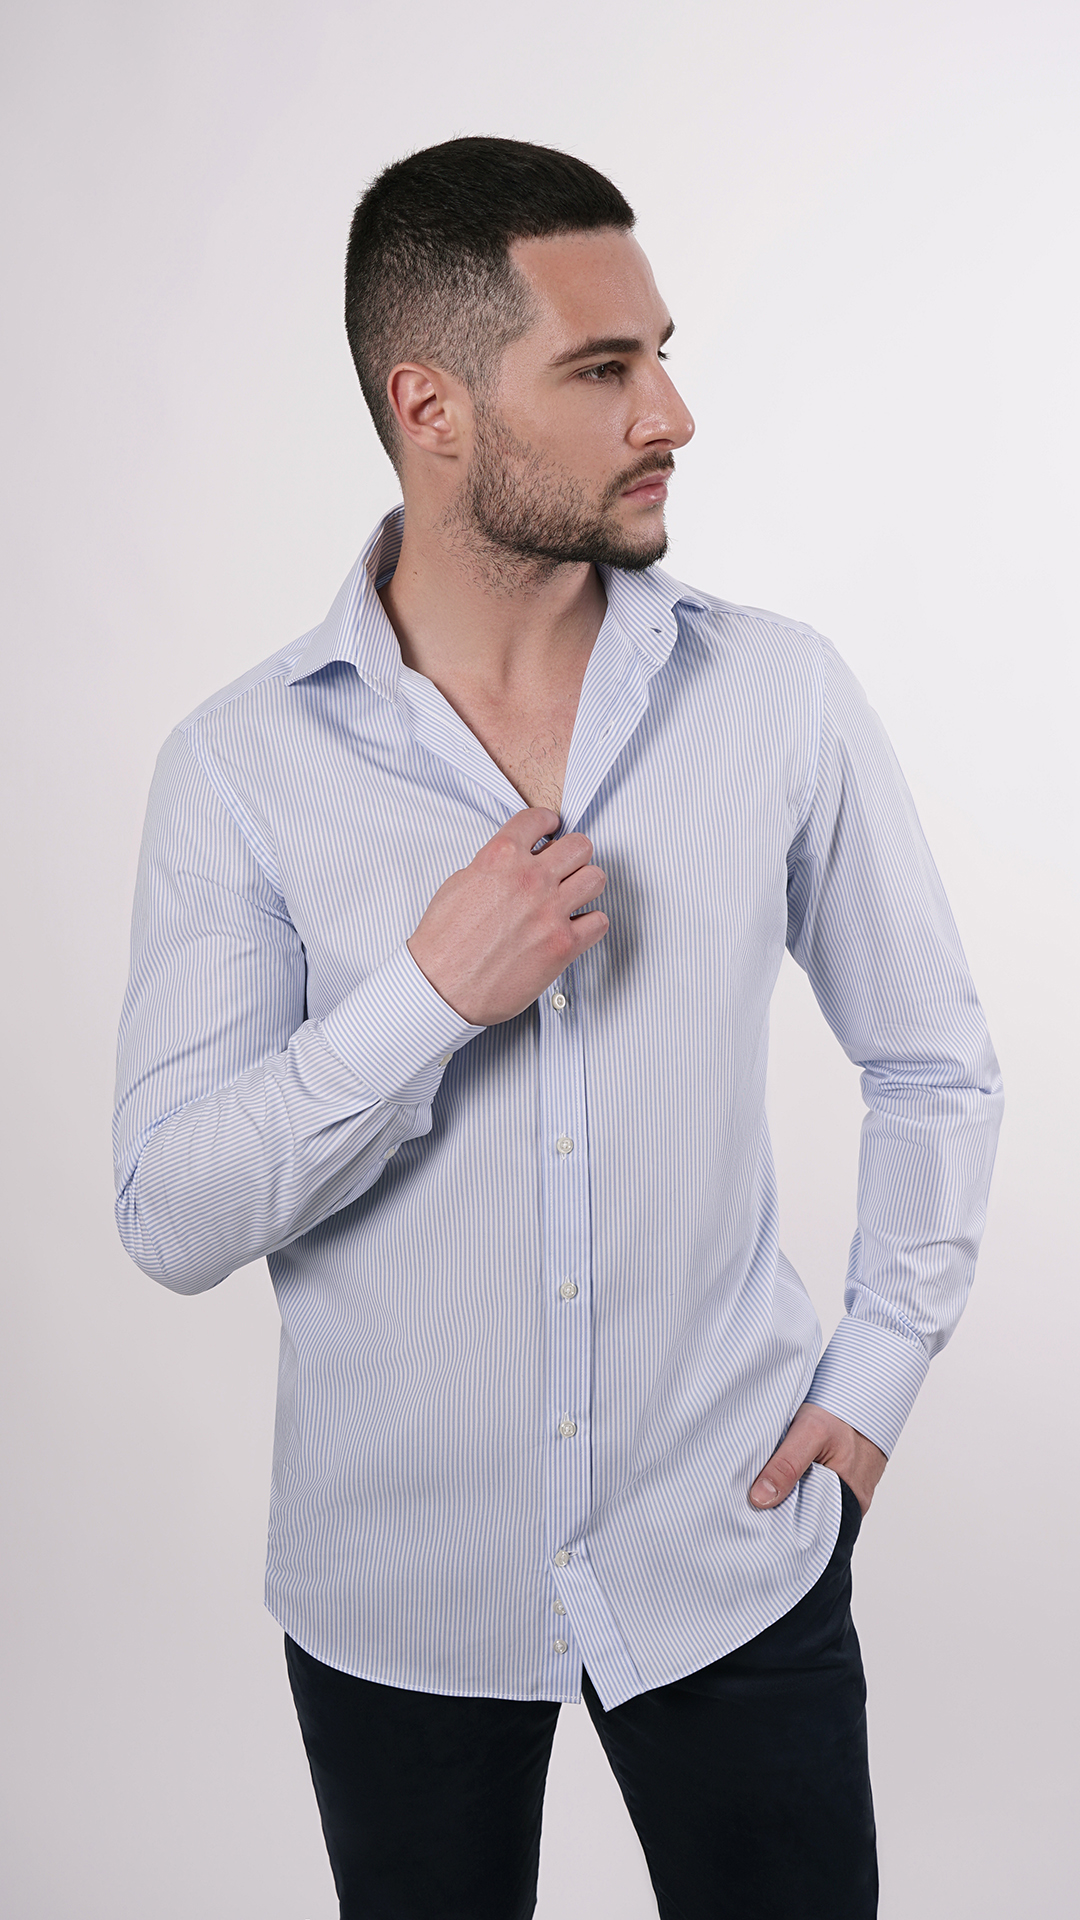 LUXURYJT0099 2 1stAmerican camicia elegante da uomo in collo classico 100% cotone alta qualità doppio ritorto manica lunga  camicia sartoriale regular fit